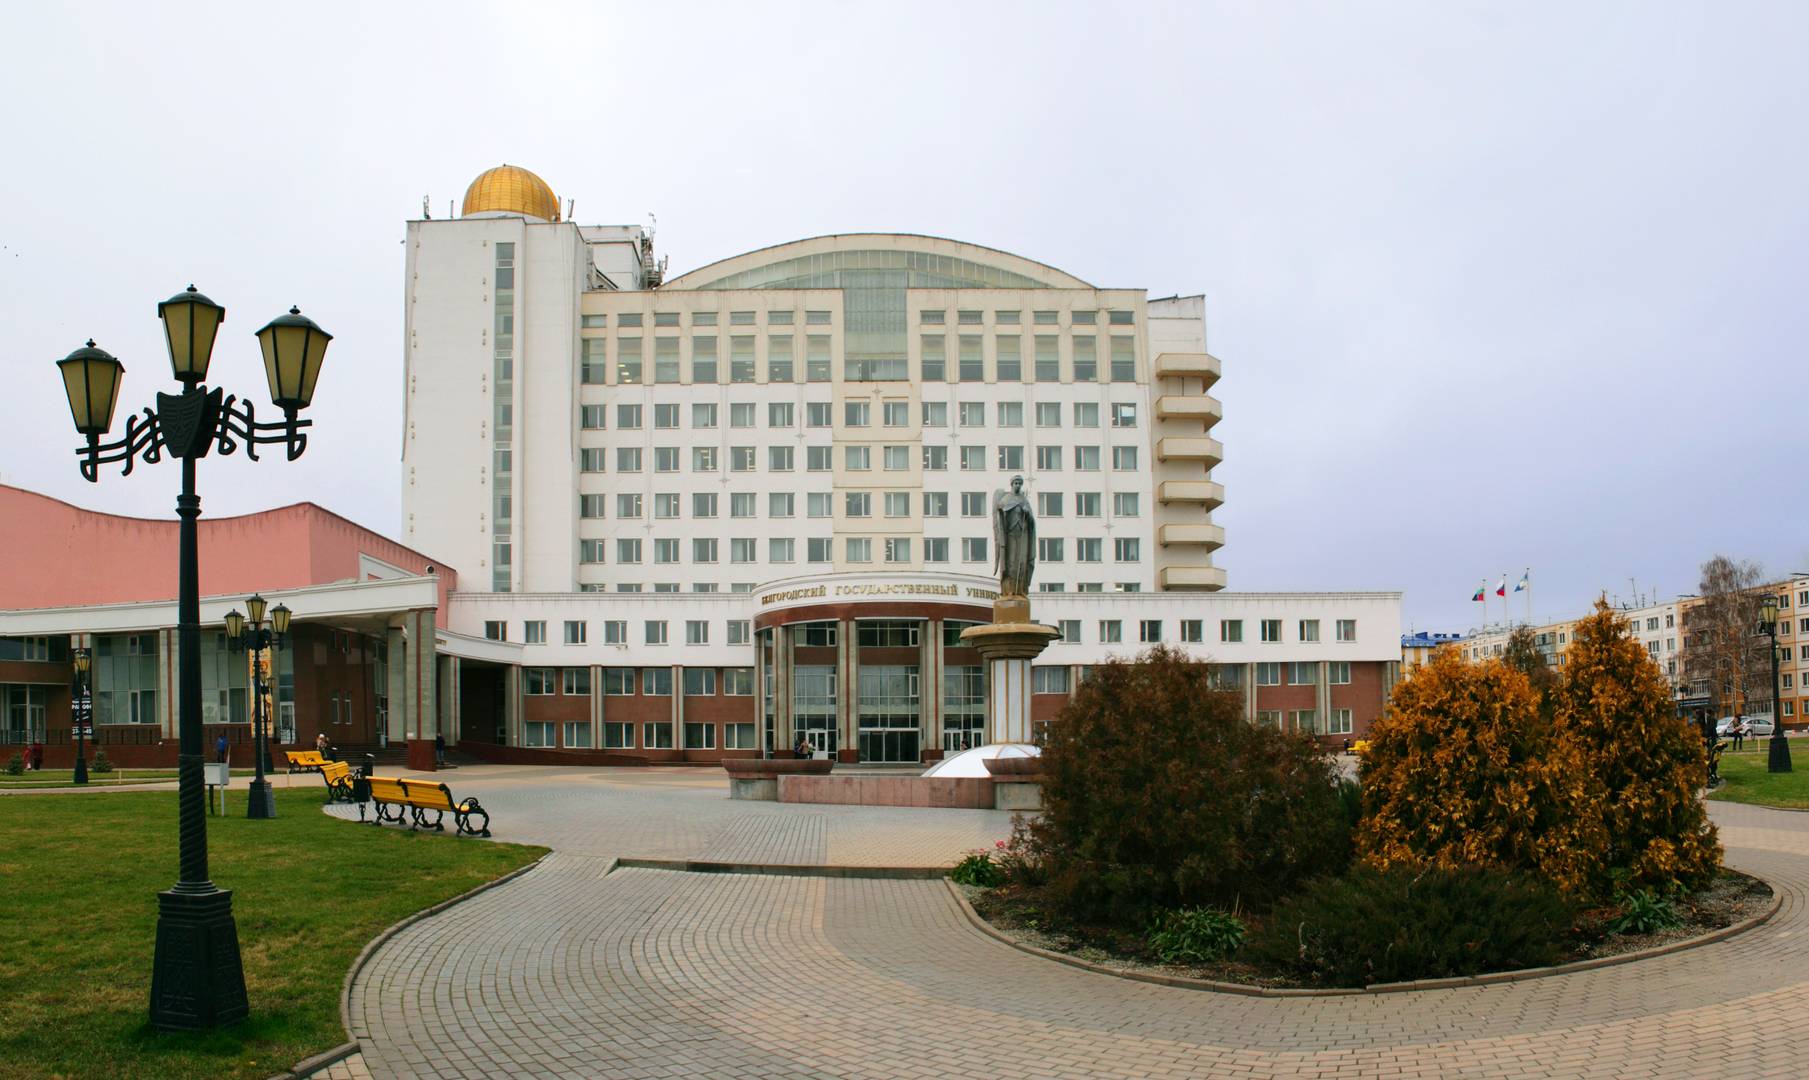 Белгородский государственный университет